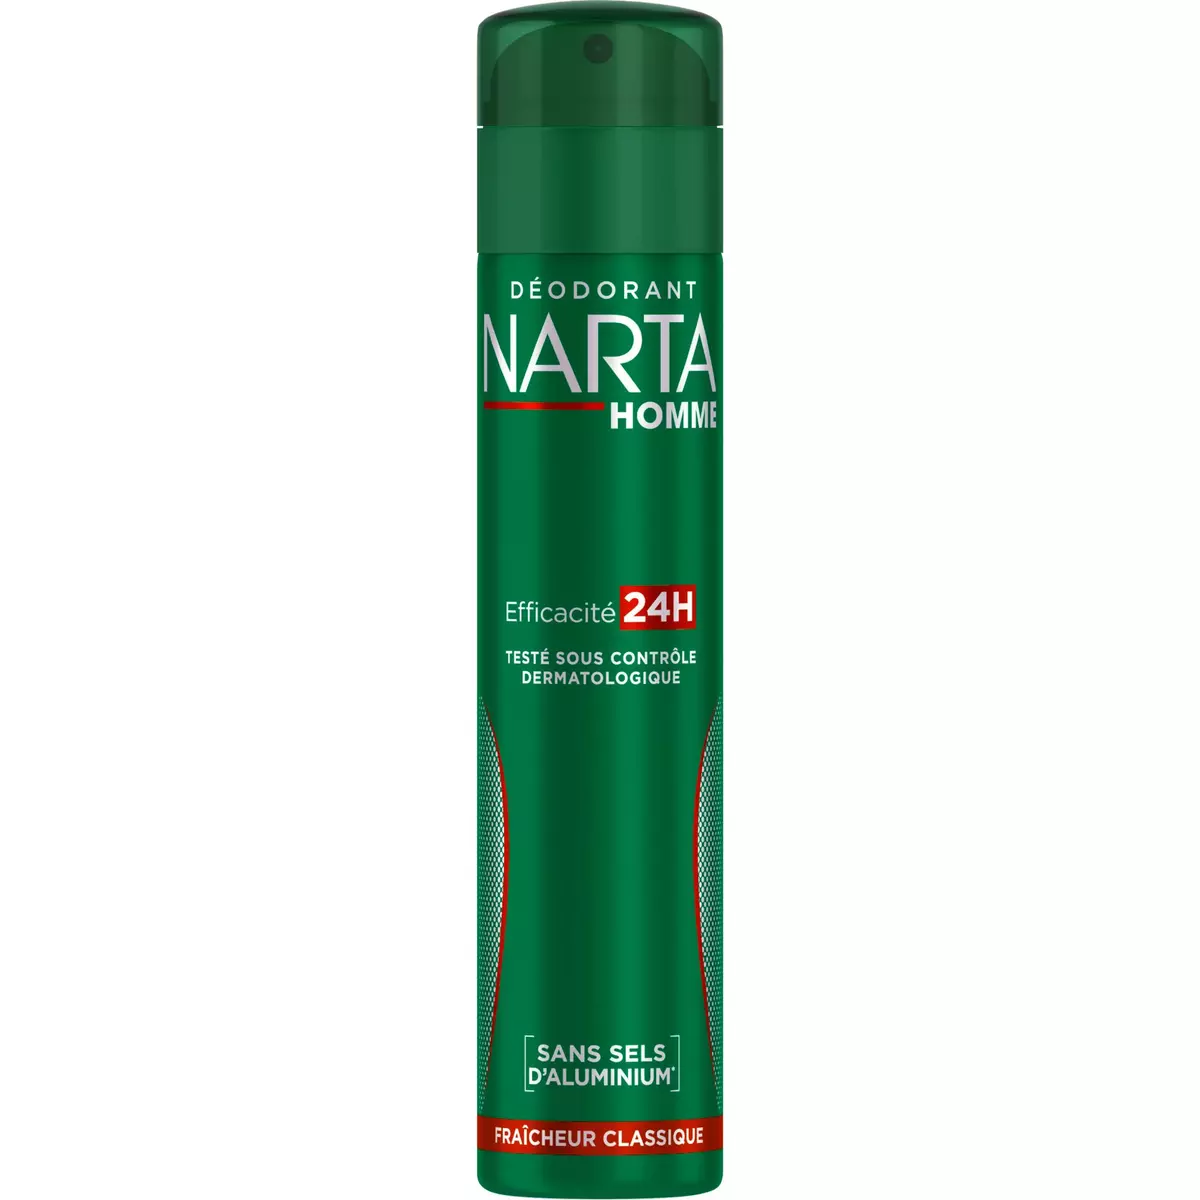 NARTA Déodorant spray 24h homme fraîcheur classique sans sels d'aluminium 200ml